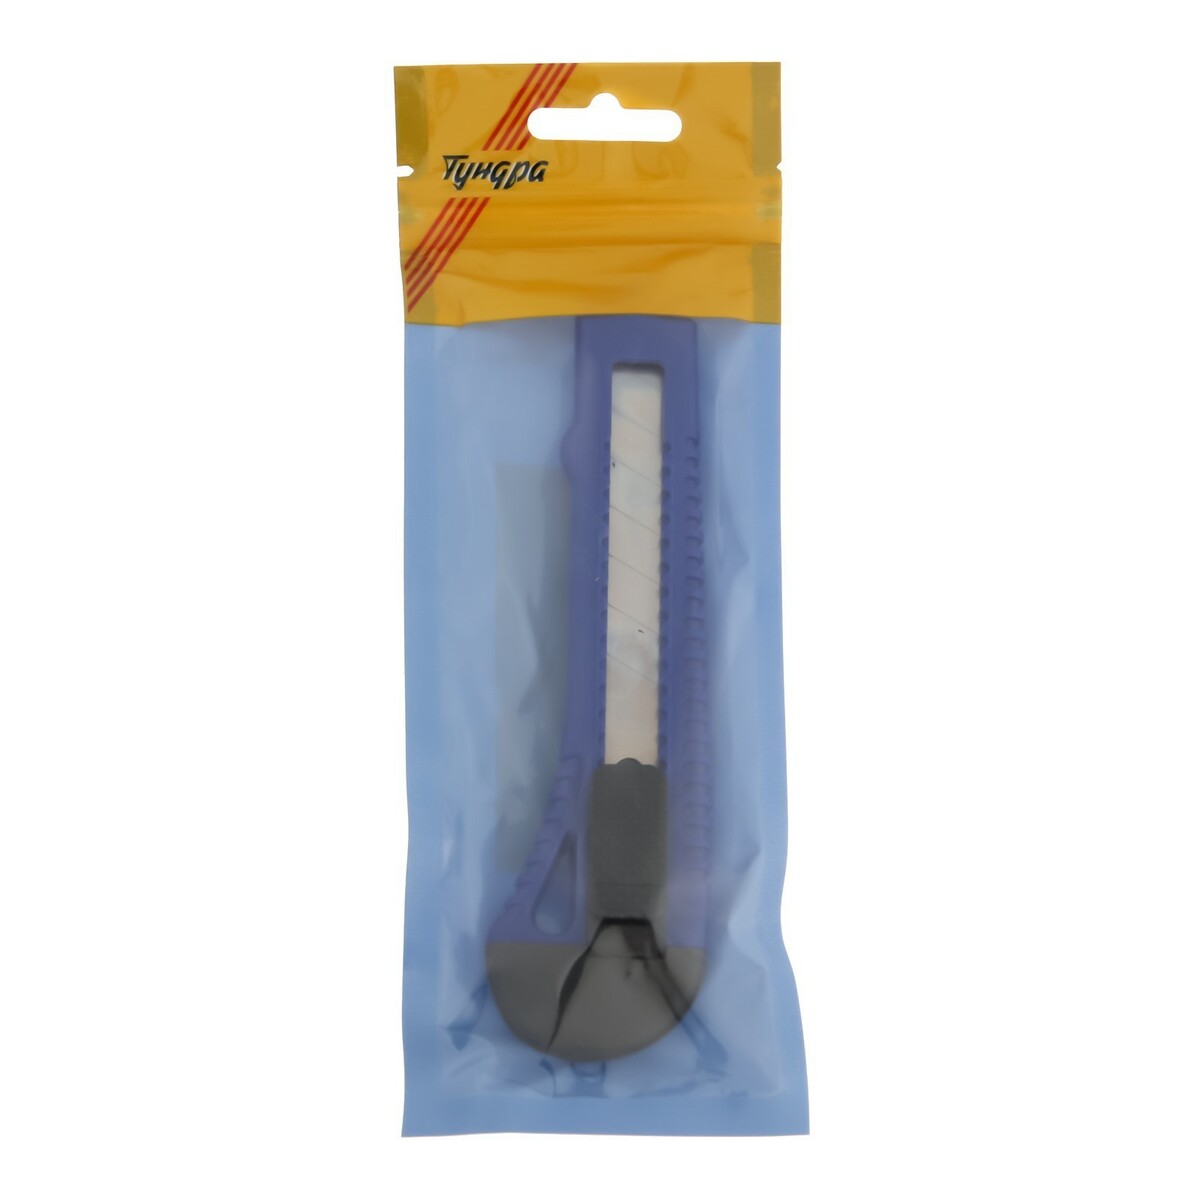 Нож универсальный тундра вдом, пластиковый корпус, 18 мм нож универсальный тундра вдом пластиковый корпус 18 мм